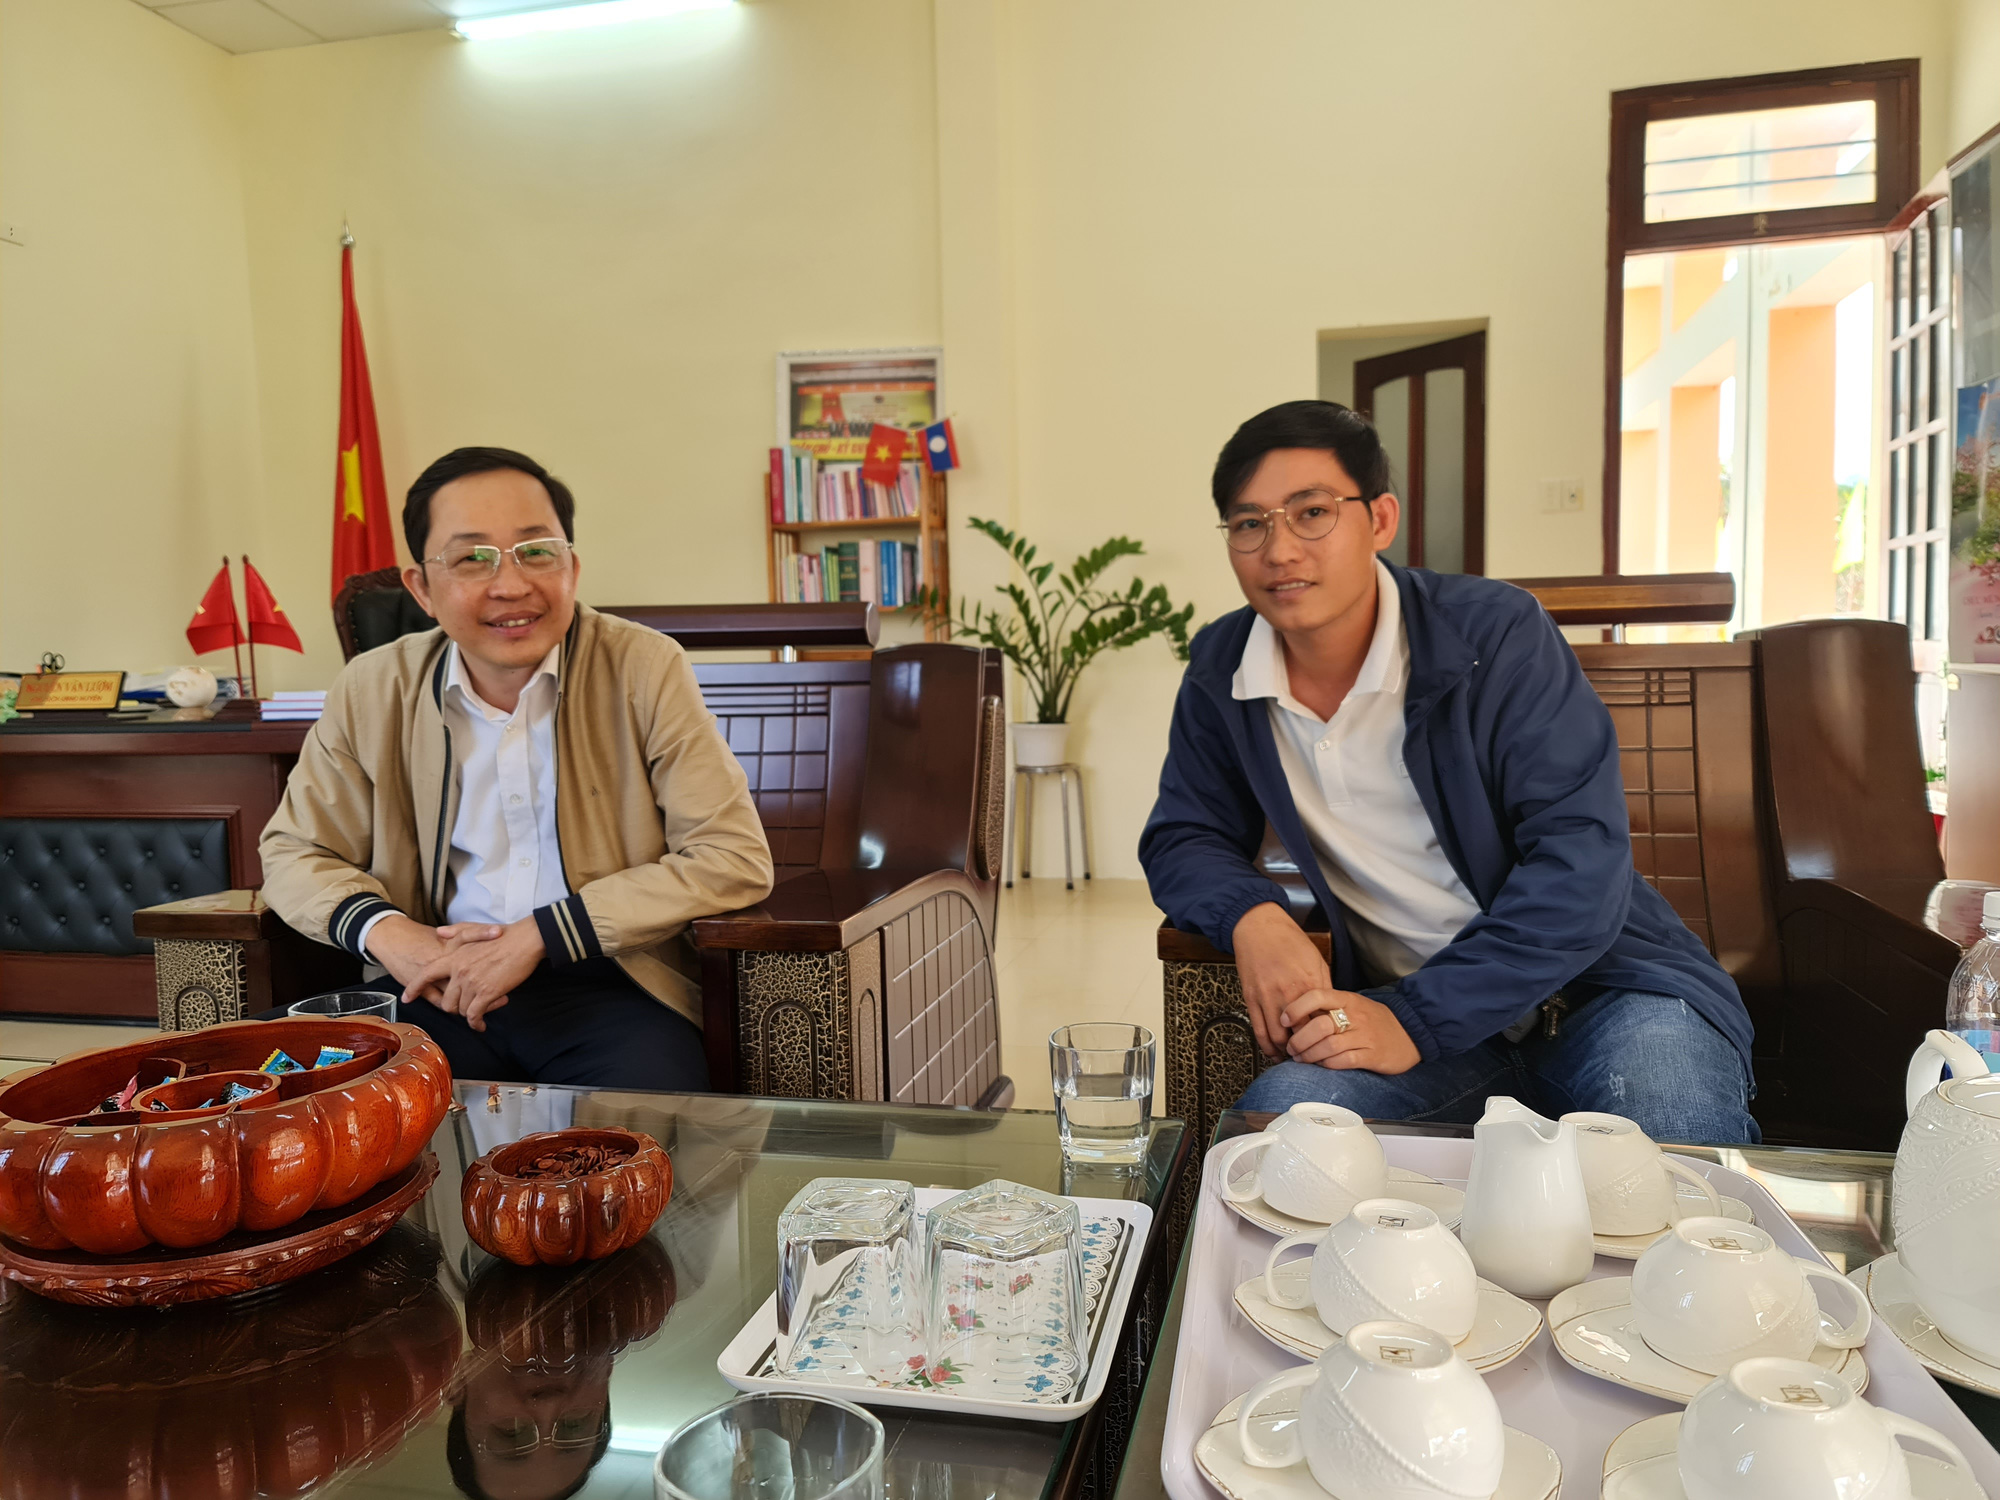 Quảng Nam: Huyện miền núi Tây Giang vượt khó khăn để nâng cao thu nhập cho người dân - Ảnh 1.